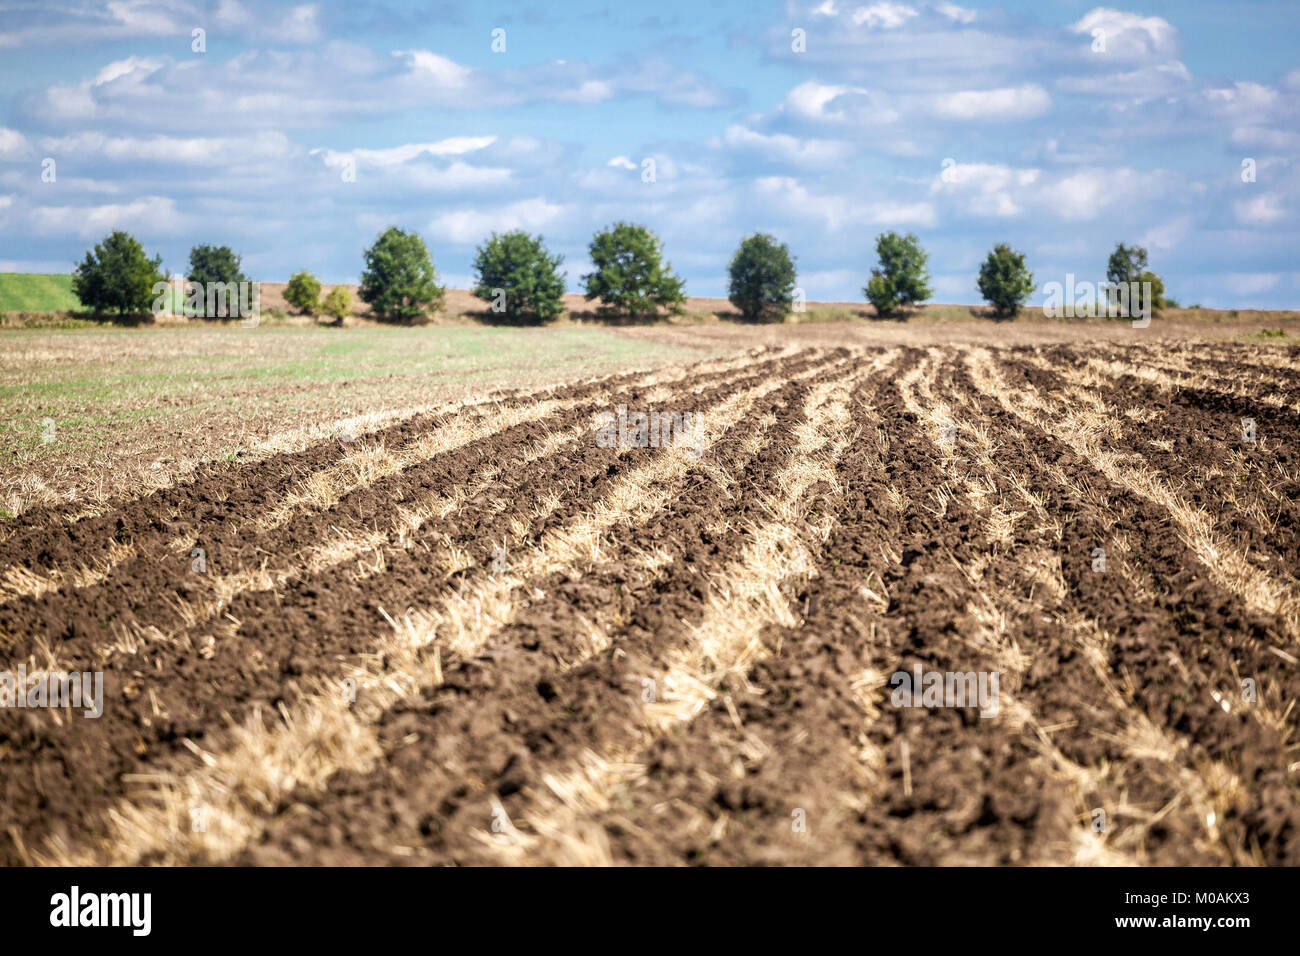 Landscape, Rows of plowed field, Czech Republic Stock Photo